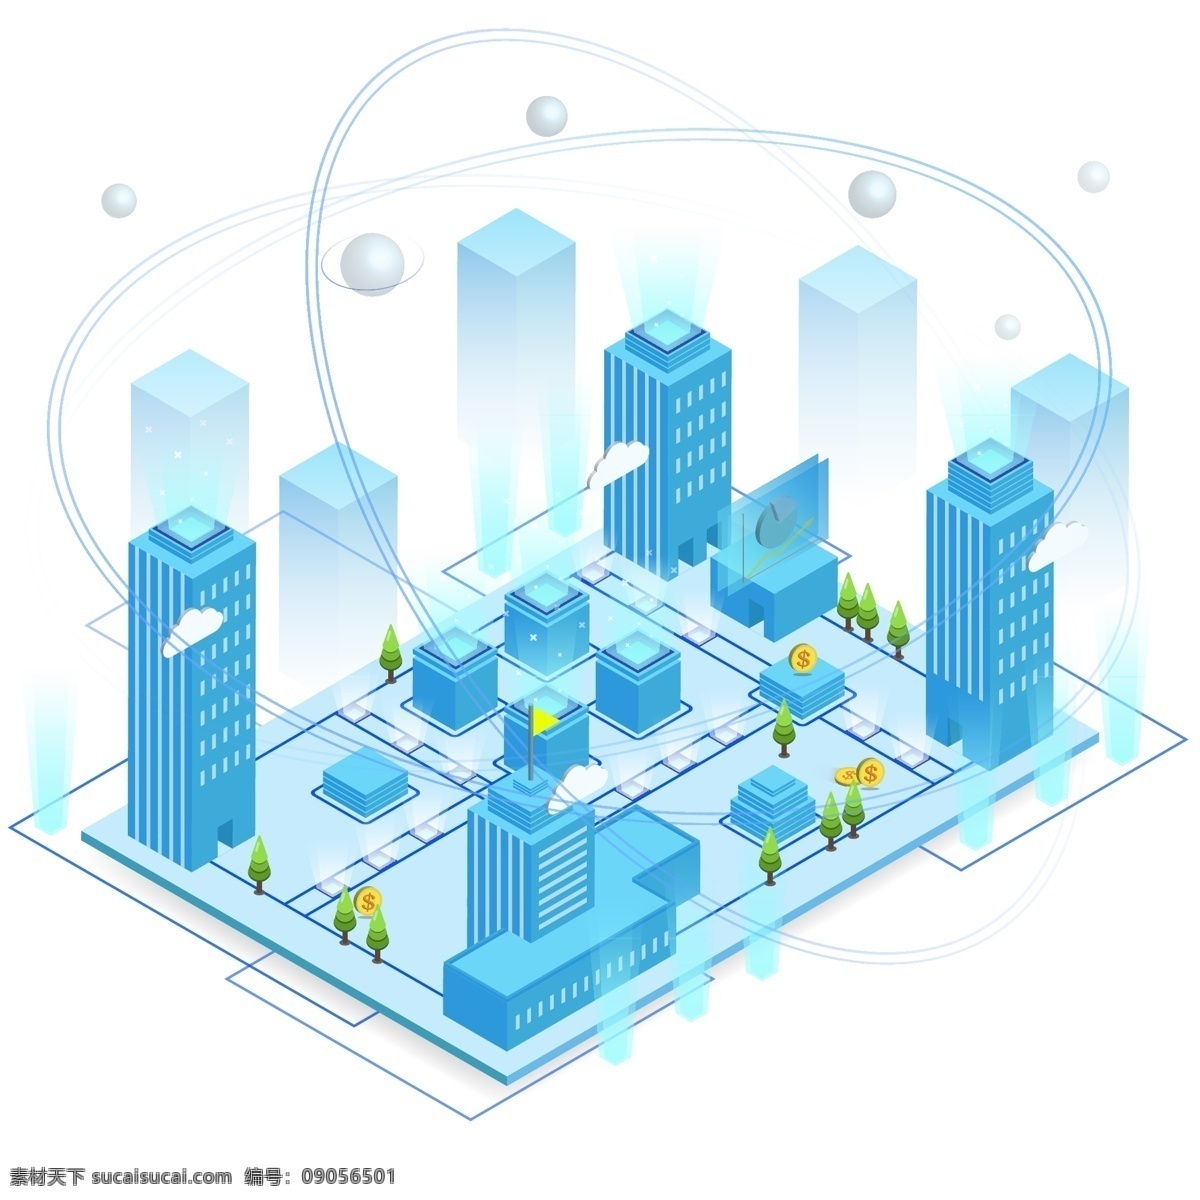 d 科技 互联网 城市 建筑 未来 智慧 信息化 原创 科技城市 2.5d 互联网城市 智慧城市 未来城市 资源供给 信息传递 智能城市 城市管网 管道输送